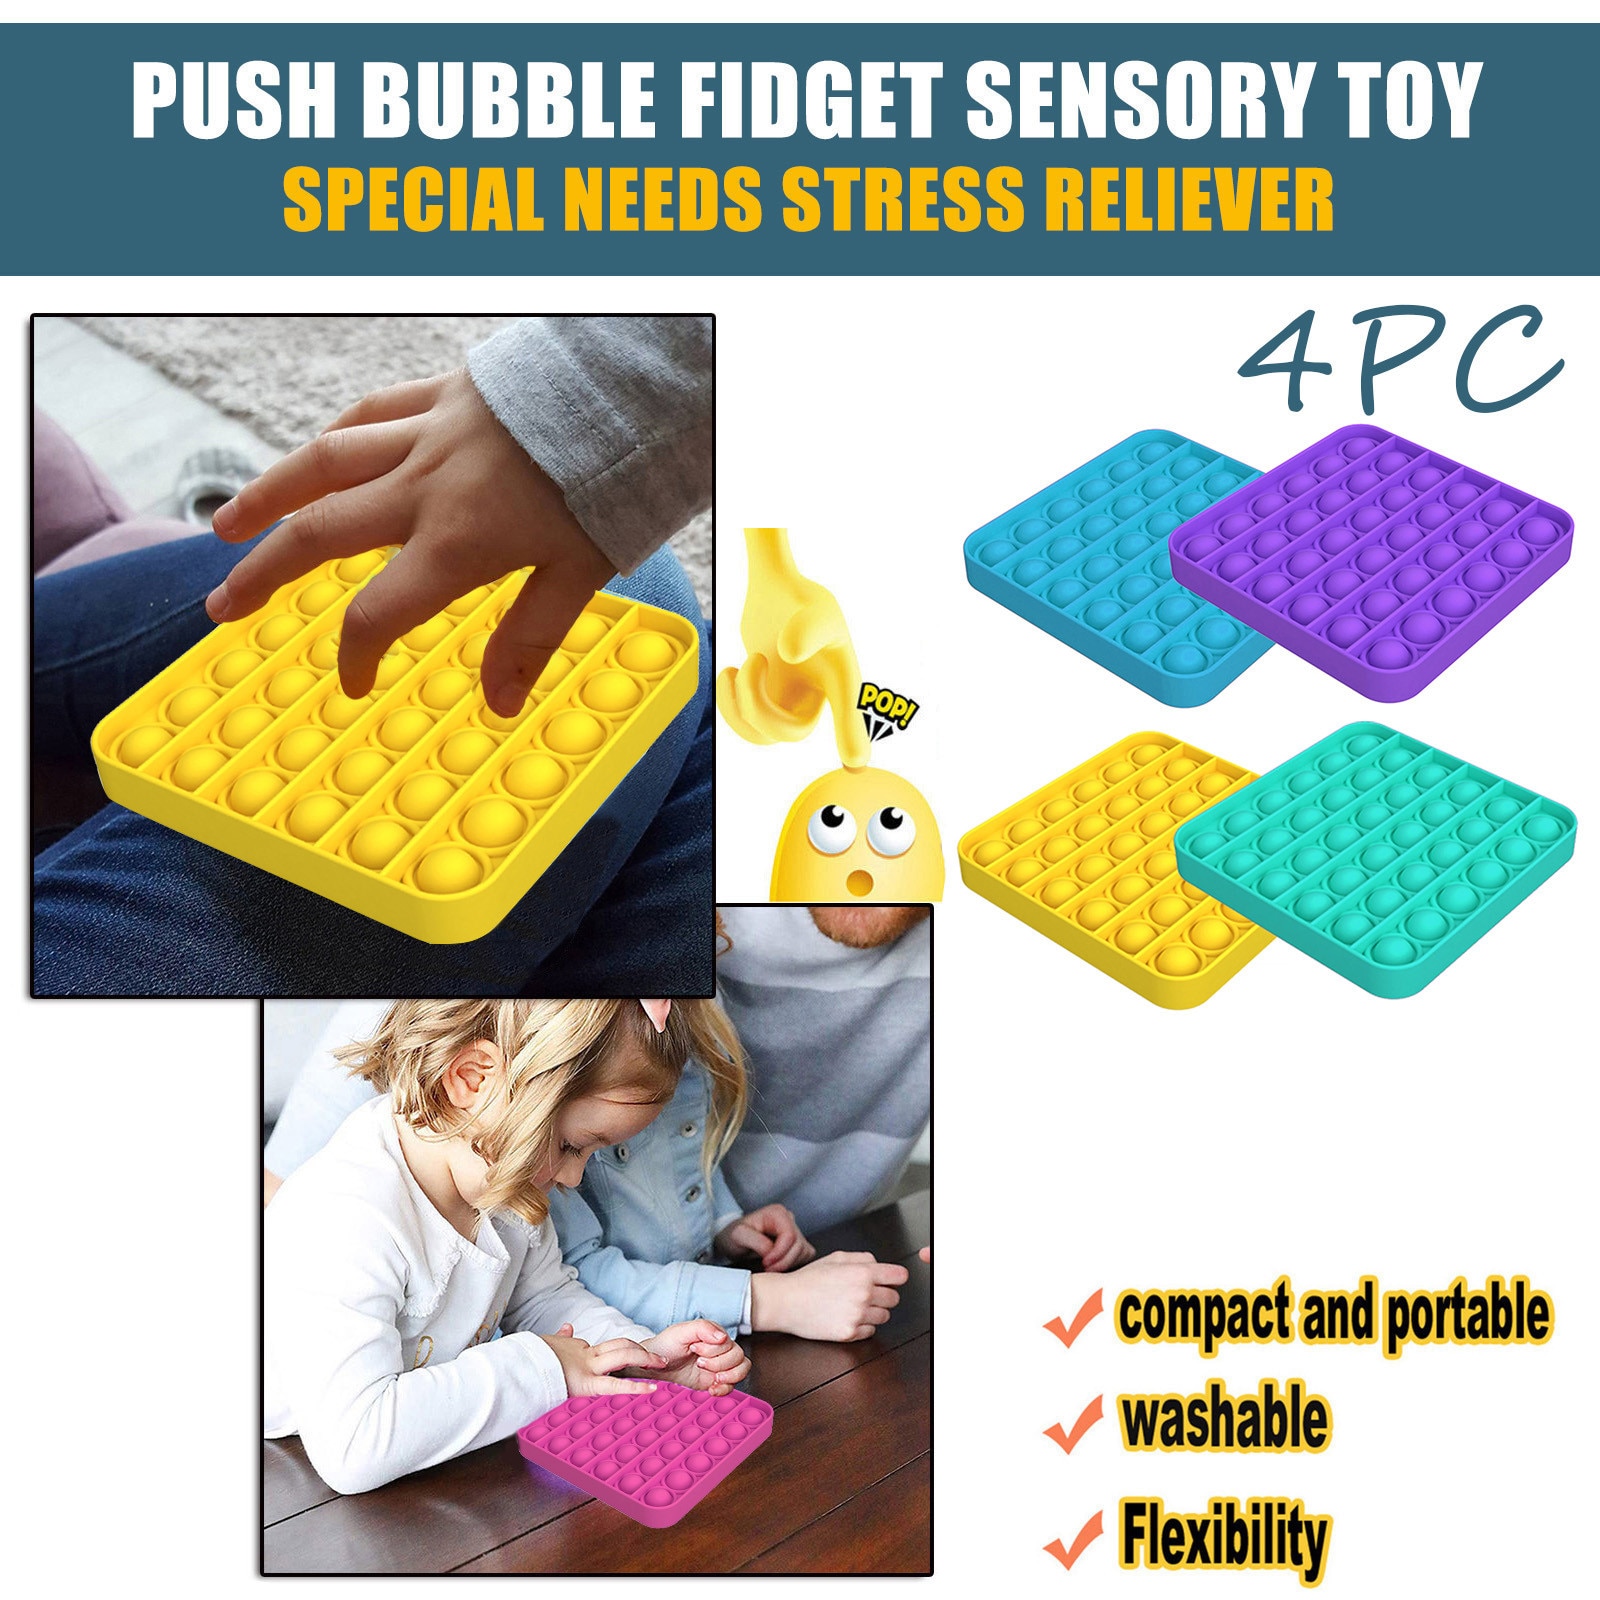 Kinderen Antistress Speelgoed Fidget Spinner Popit Speelgoed 4Pc Push Bubble Fidget Zintuiglijke Speelgoed Autisme Speciale Behoeften Stress Reliever Speelgoed